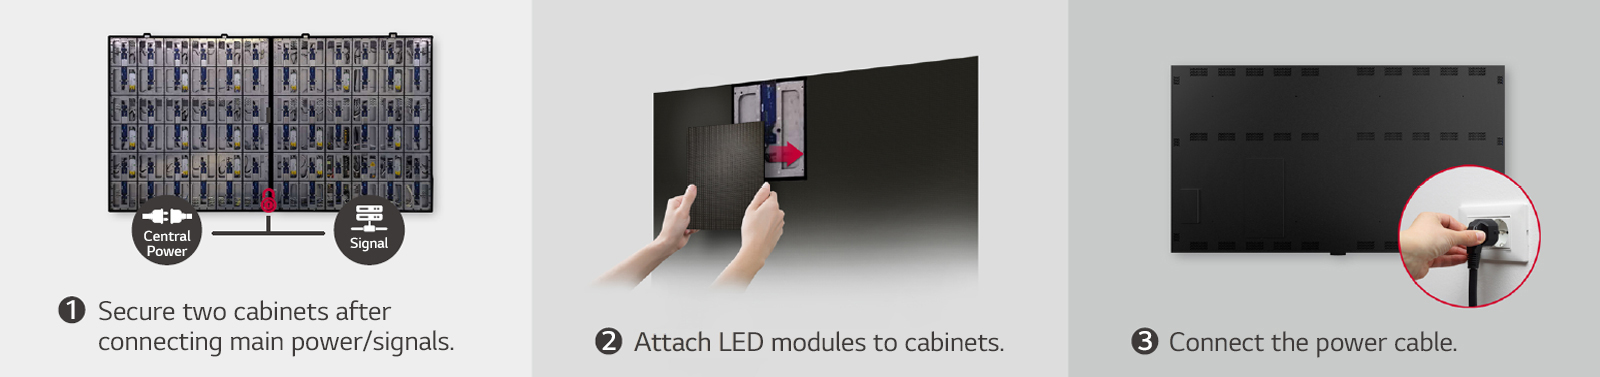 Isso consiste em imagens de 3 etapas para fixar dois gabinetes, conectar módulos de LED e conectar o cabo de alimentação.